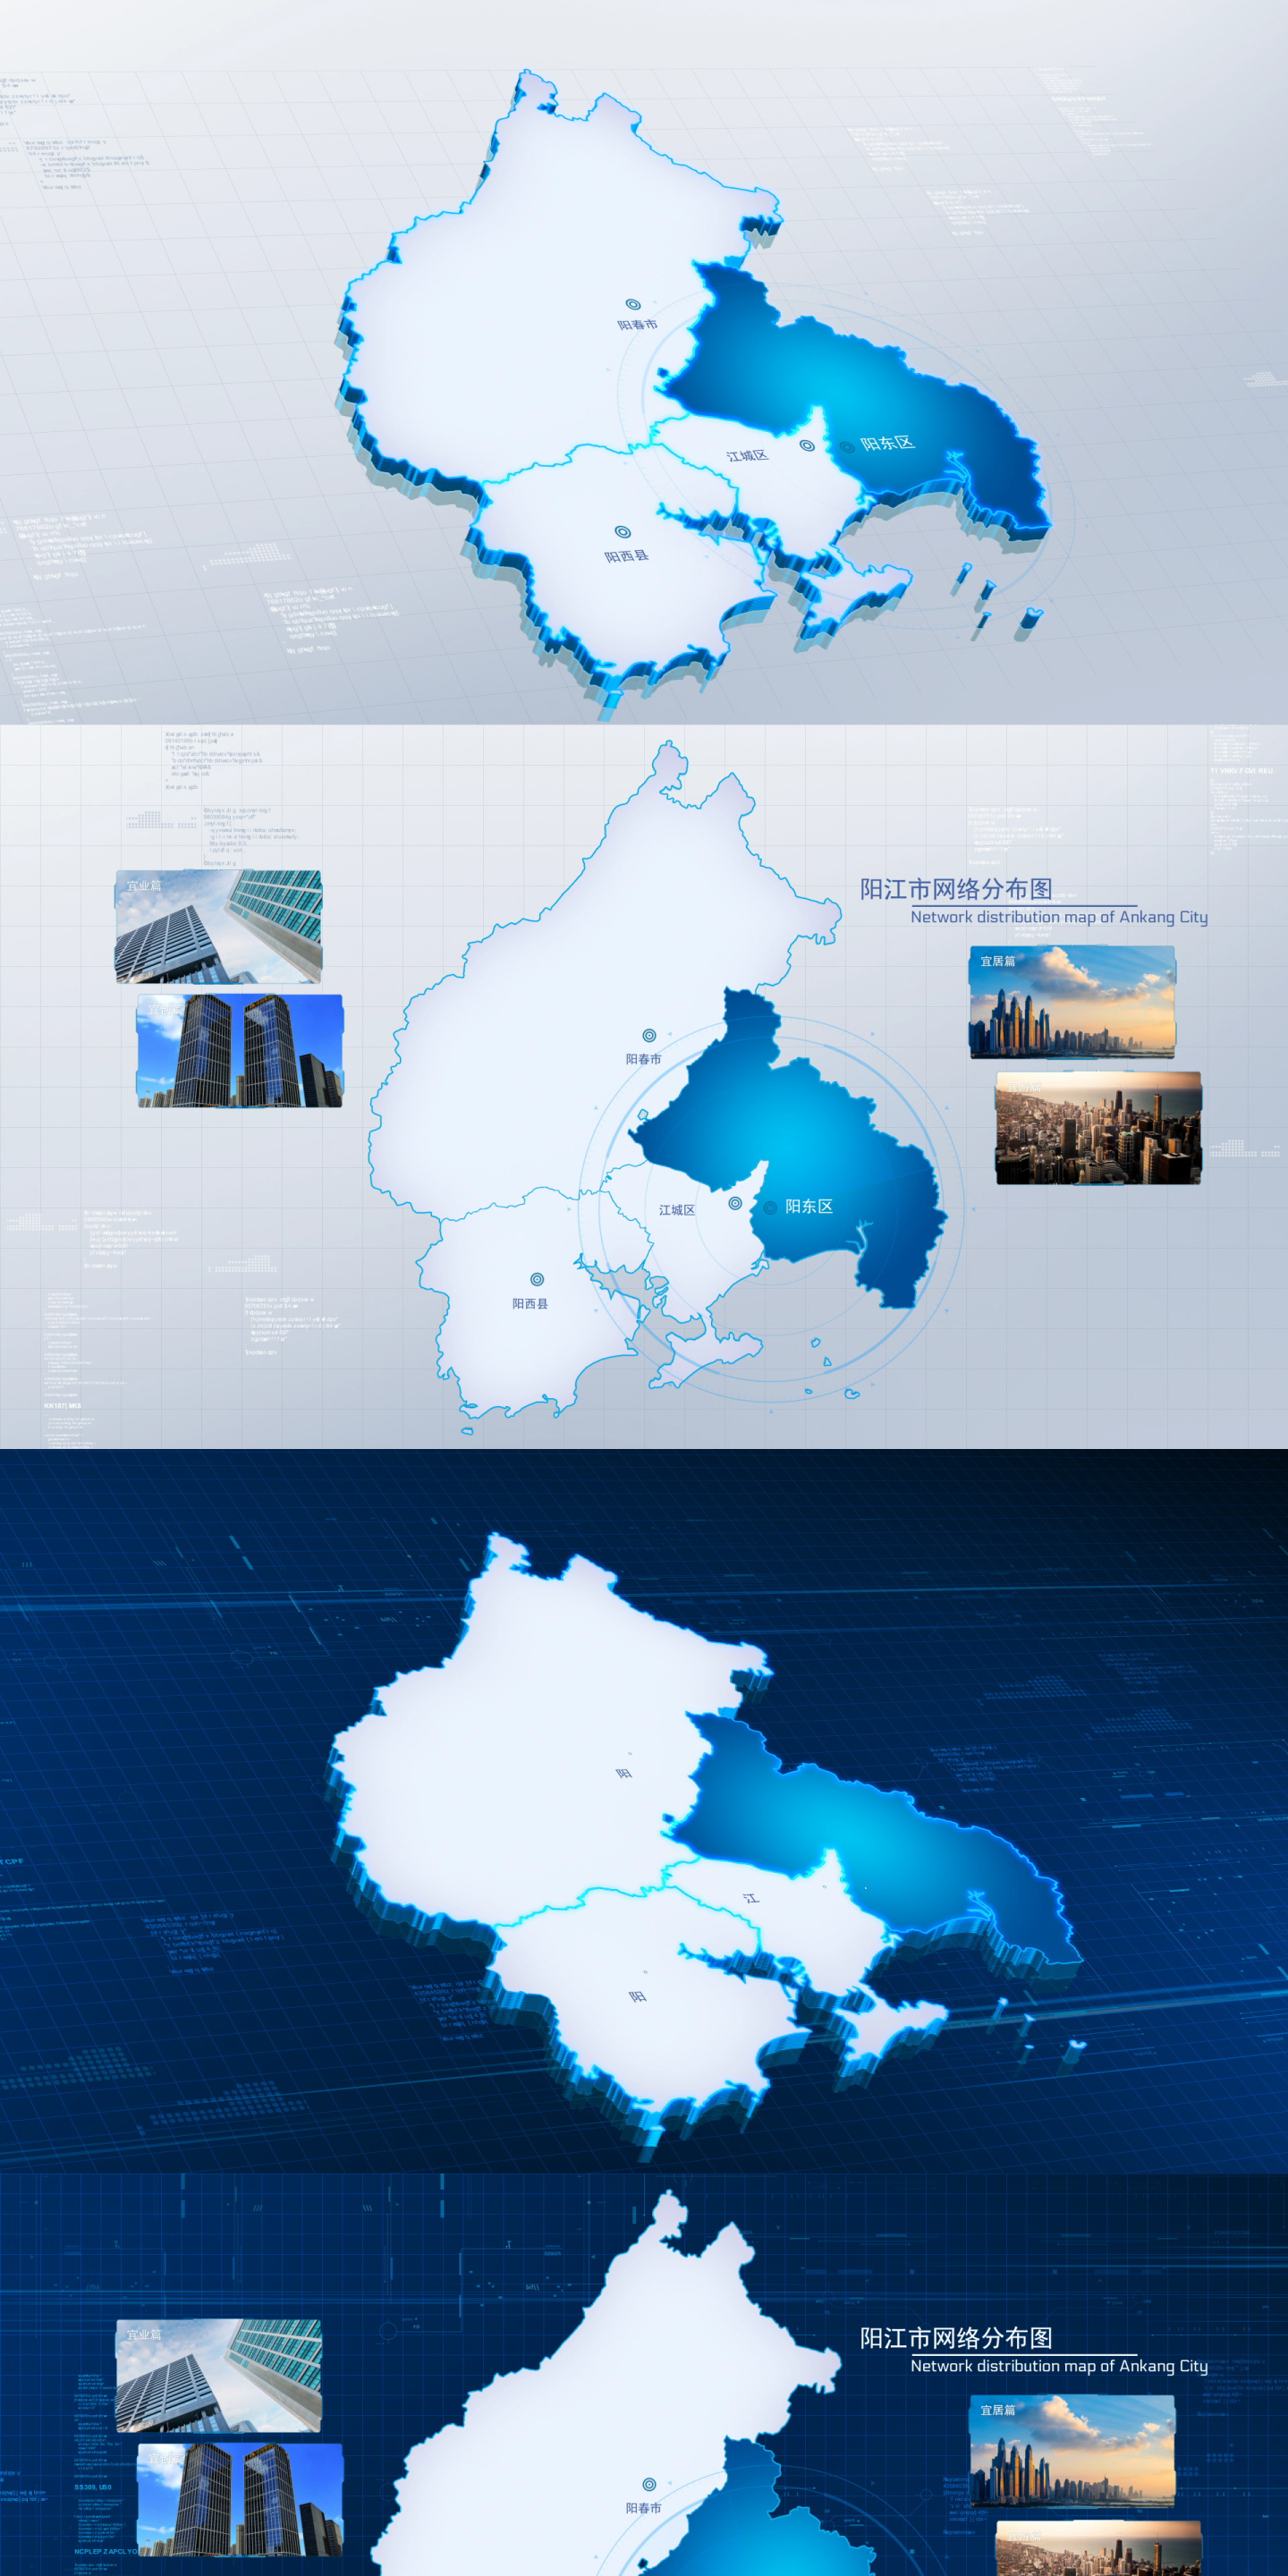 【阳江】两款蓝白图文地图定位